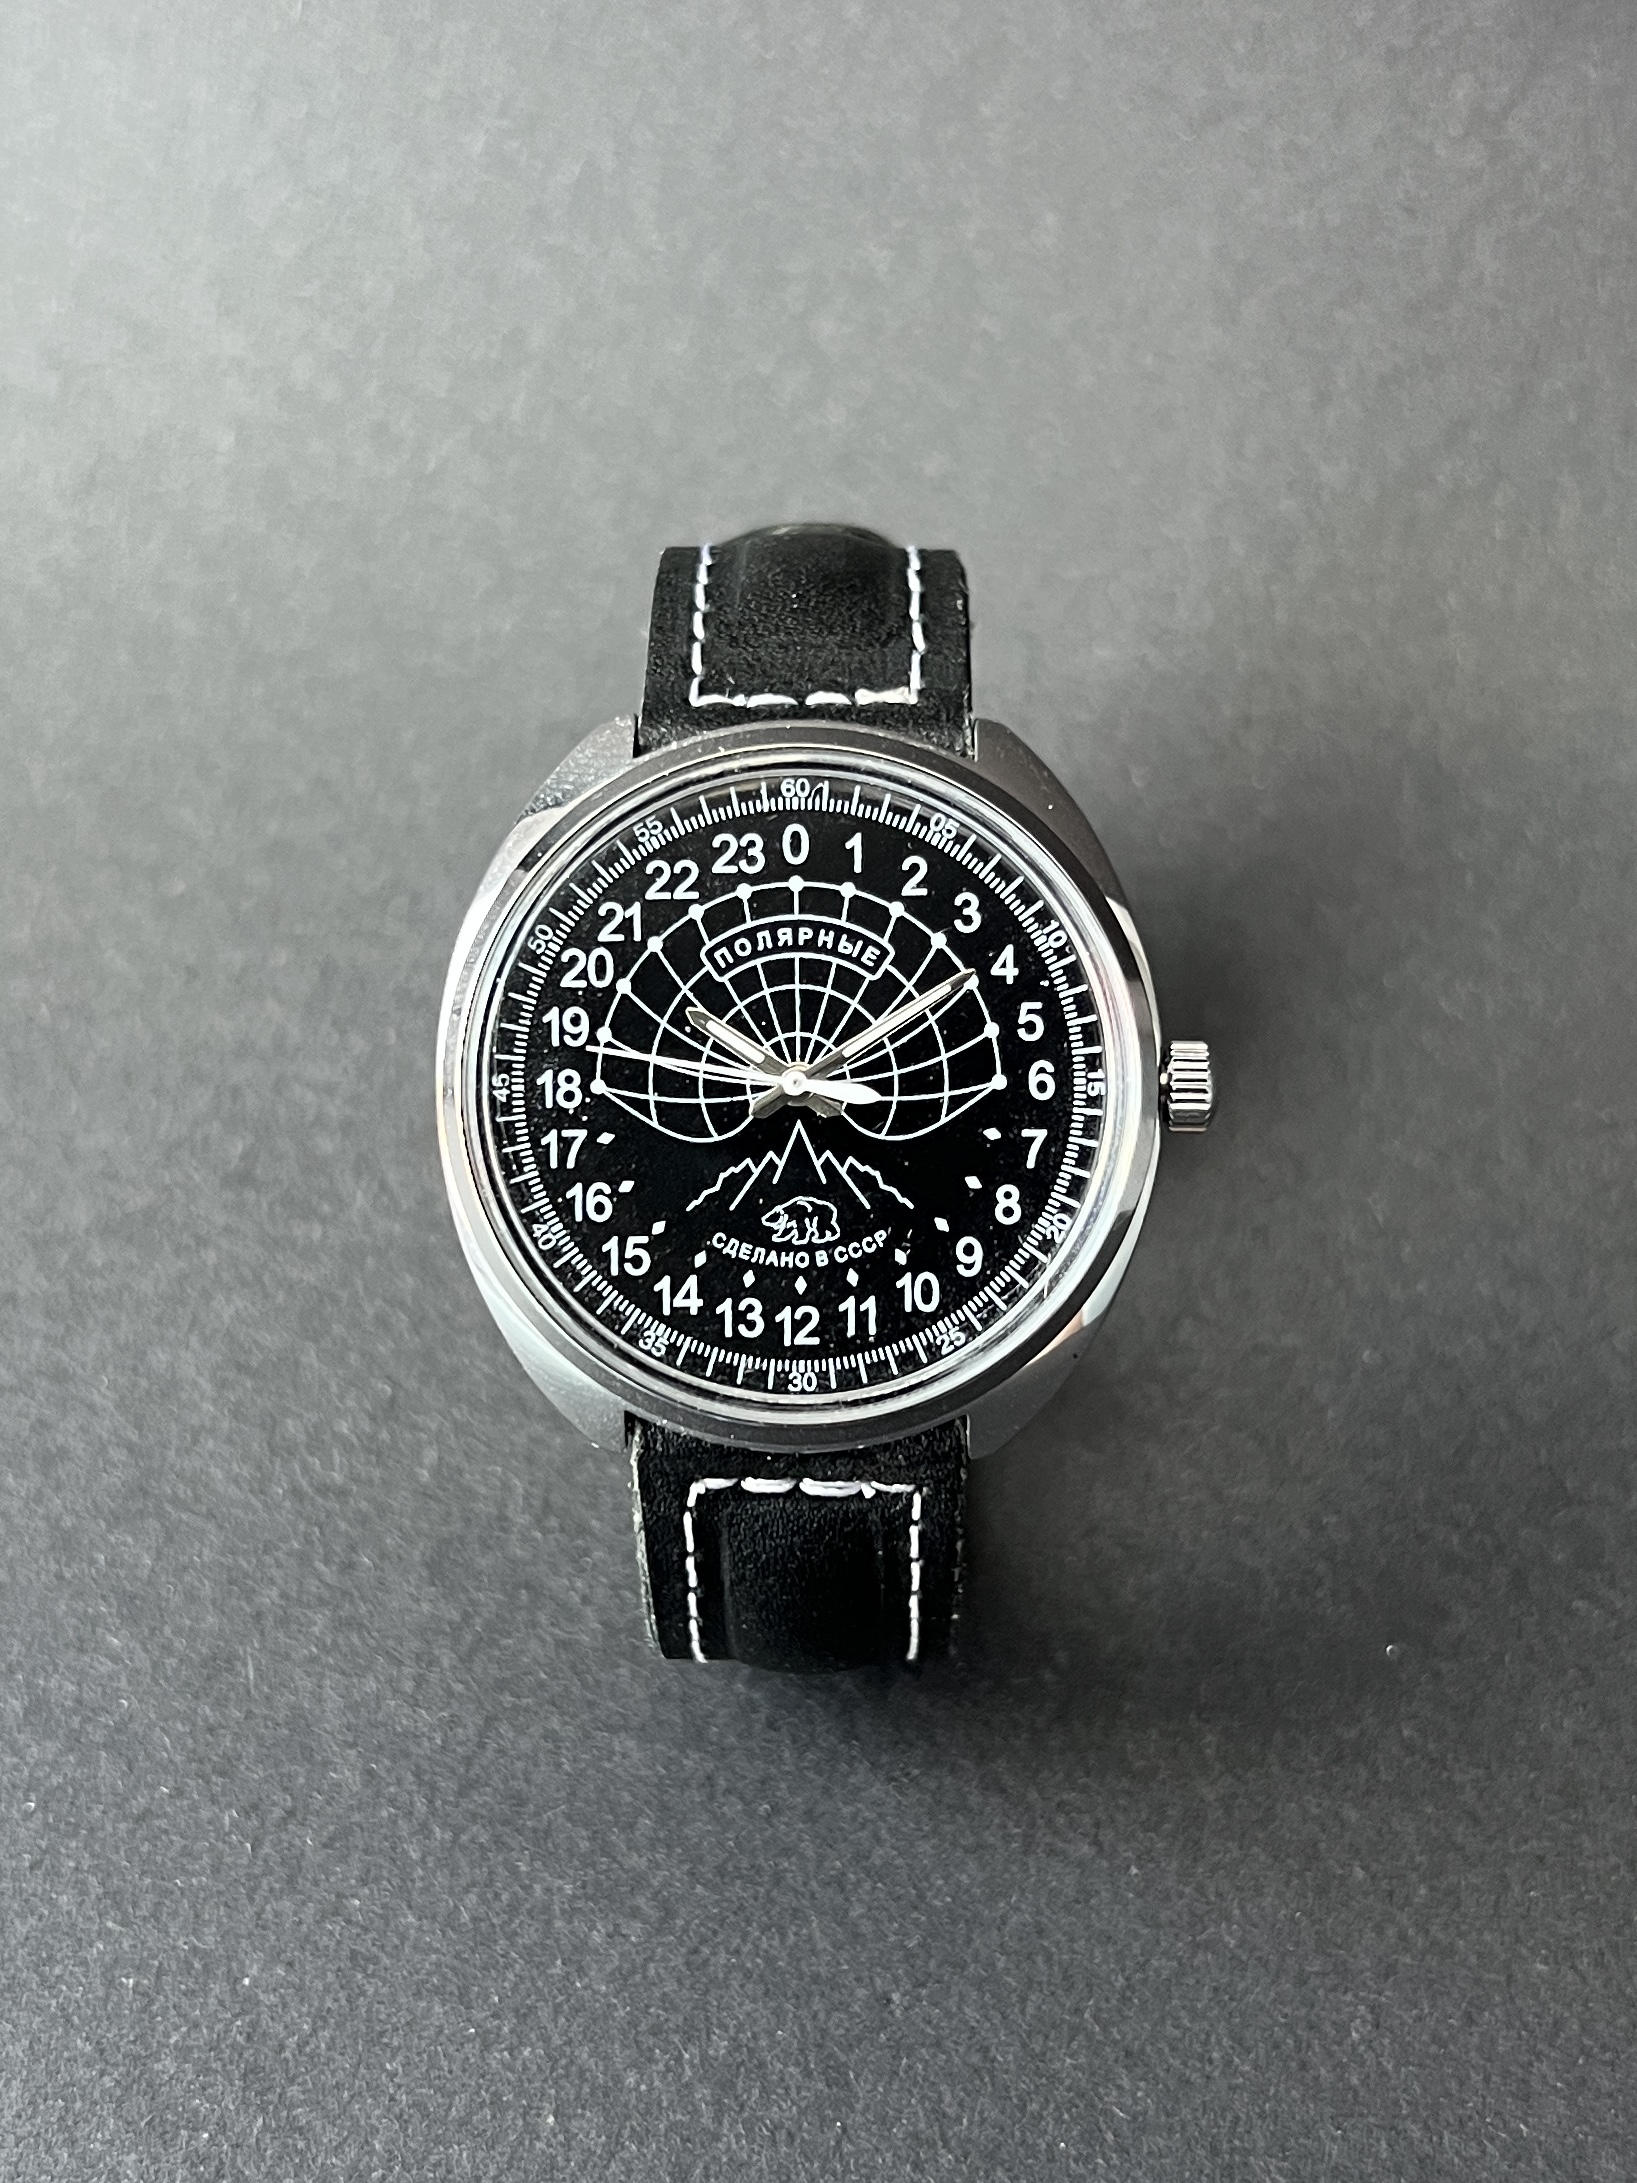 Наручные часы Ракета Полярные Советские часы купить в магазине часов "Дикий Бард"